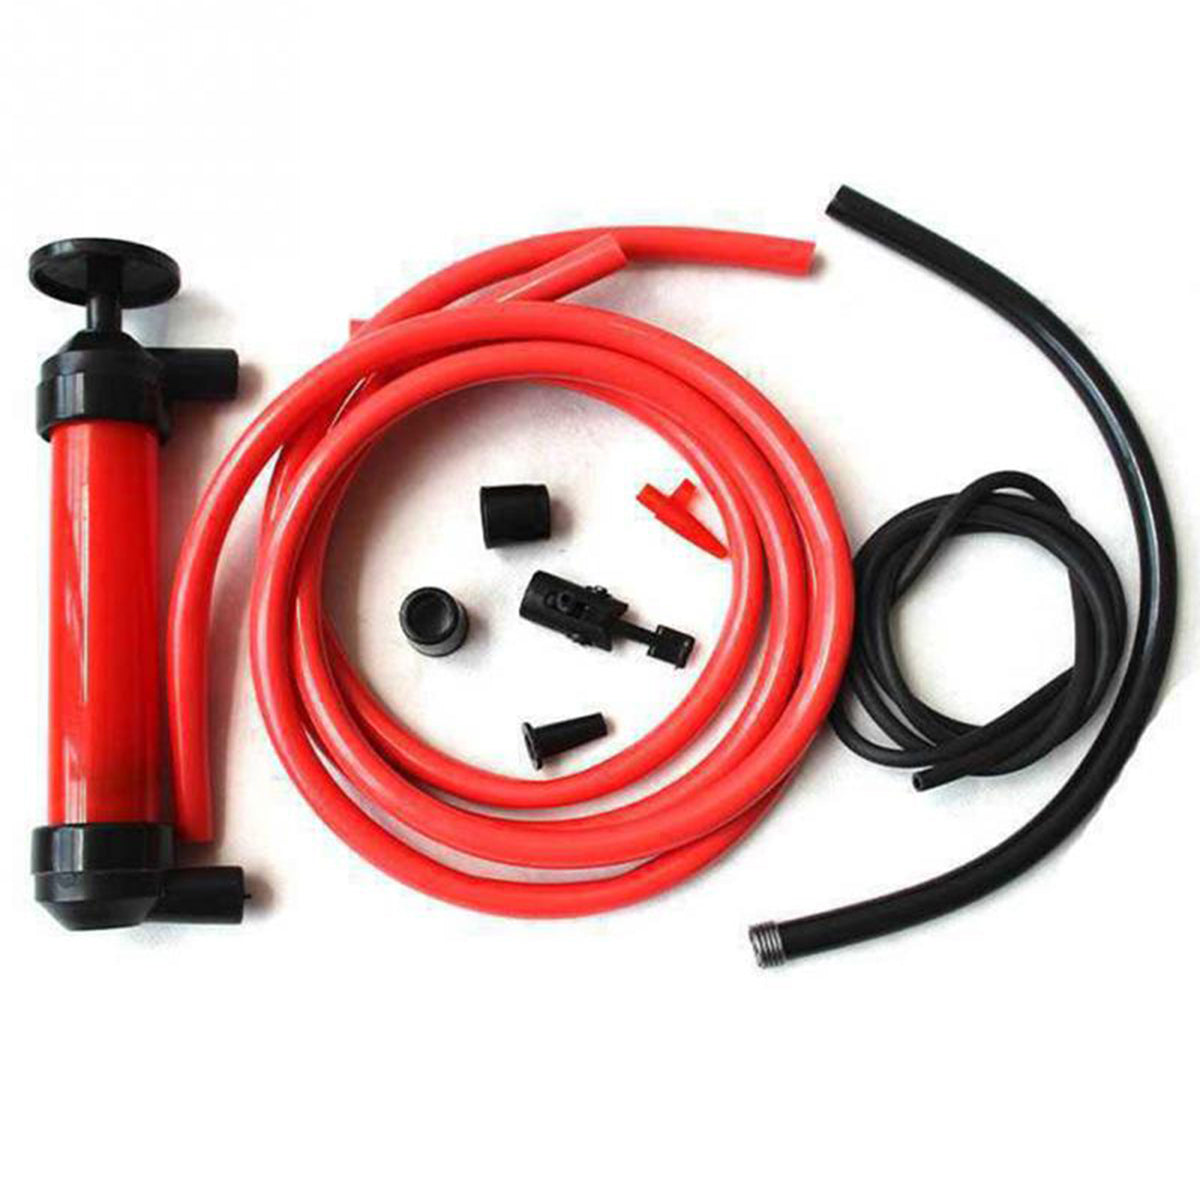 Orange Red Portable Manual Sucker Siphon Pump Transfer Oil Liquid Hand Air Pump Car